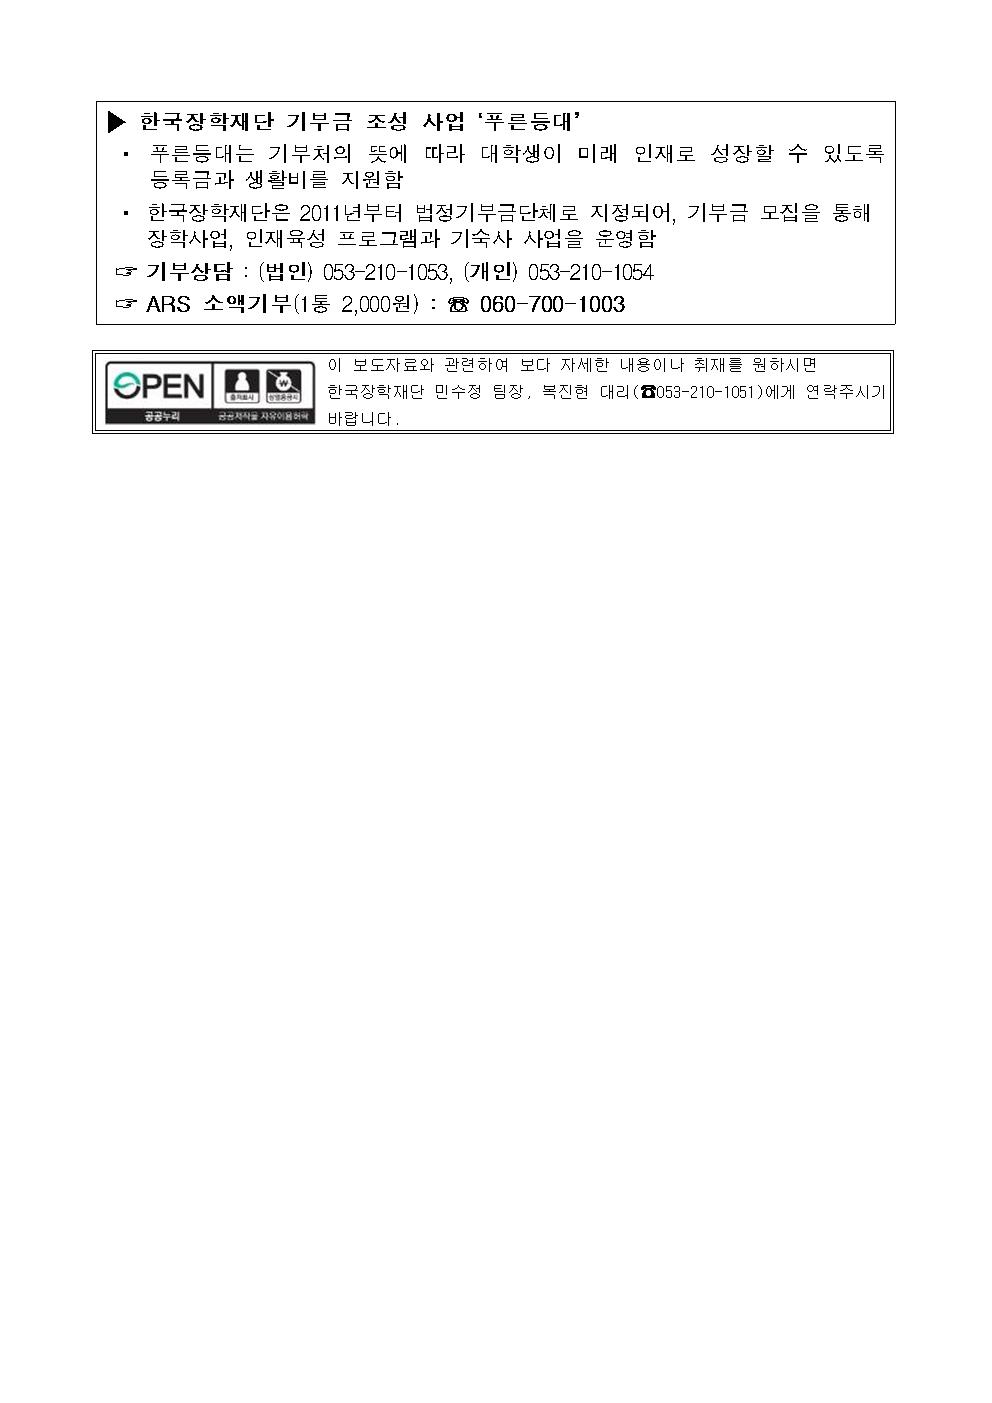 07-27(월)[보도자료] 한국장학재단, 푸른등대_국민연금공단_기부장학금_기탁식_개최003.jpg